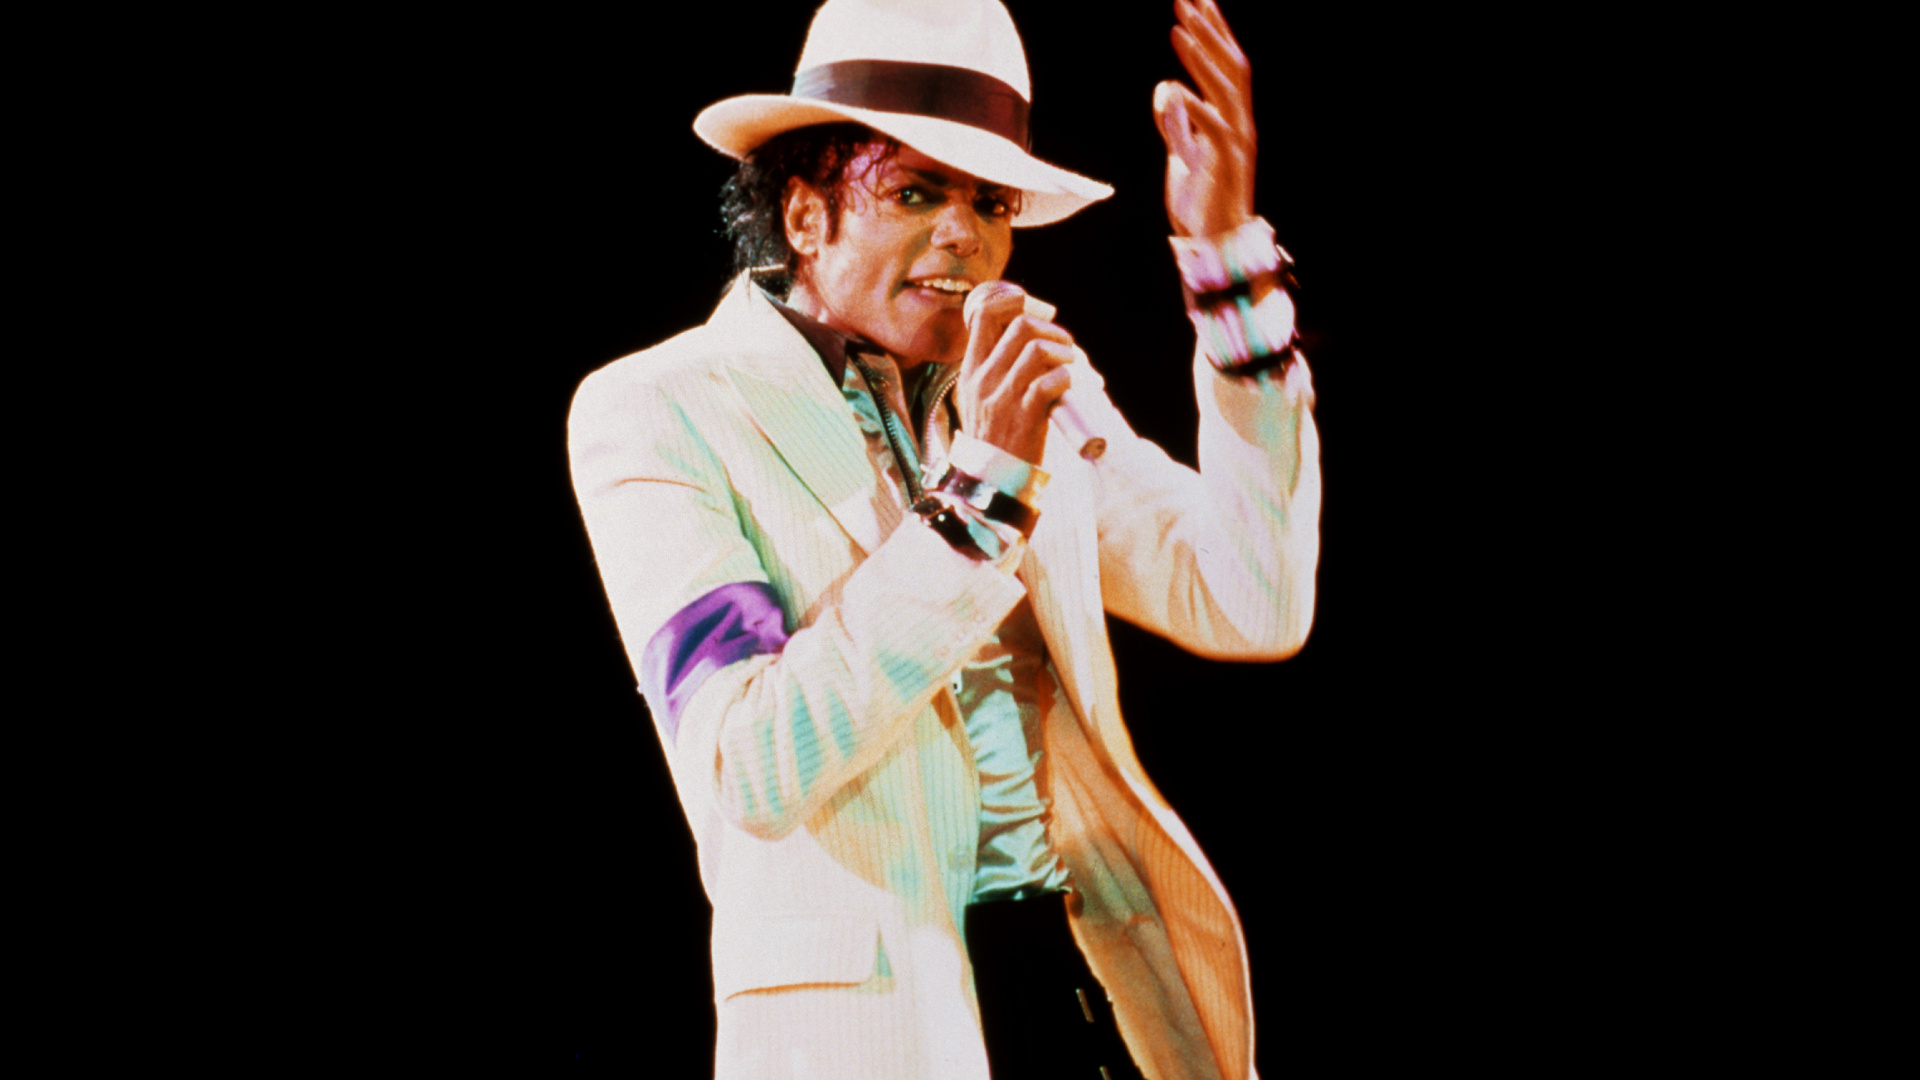 Michael Jackson, Rendimiento, el Artista de Música, Artes Escénicas, Evento. Wallpaper in 1920x1080 Resolution